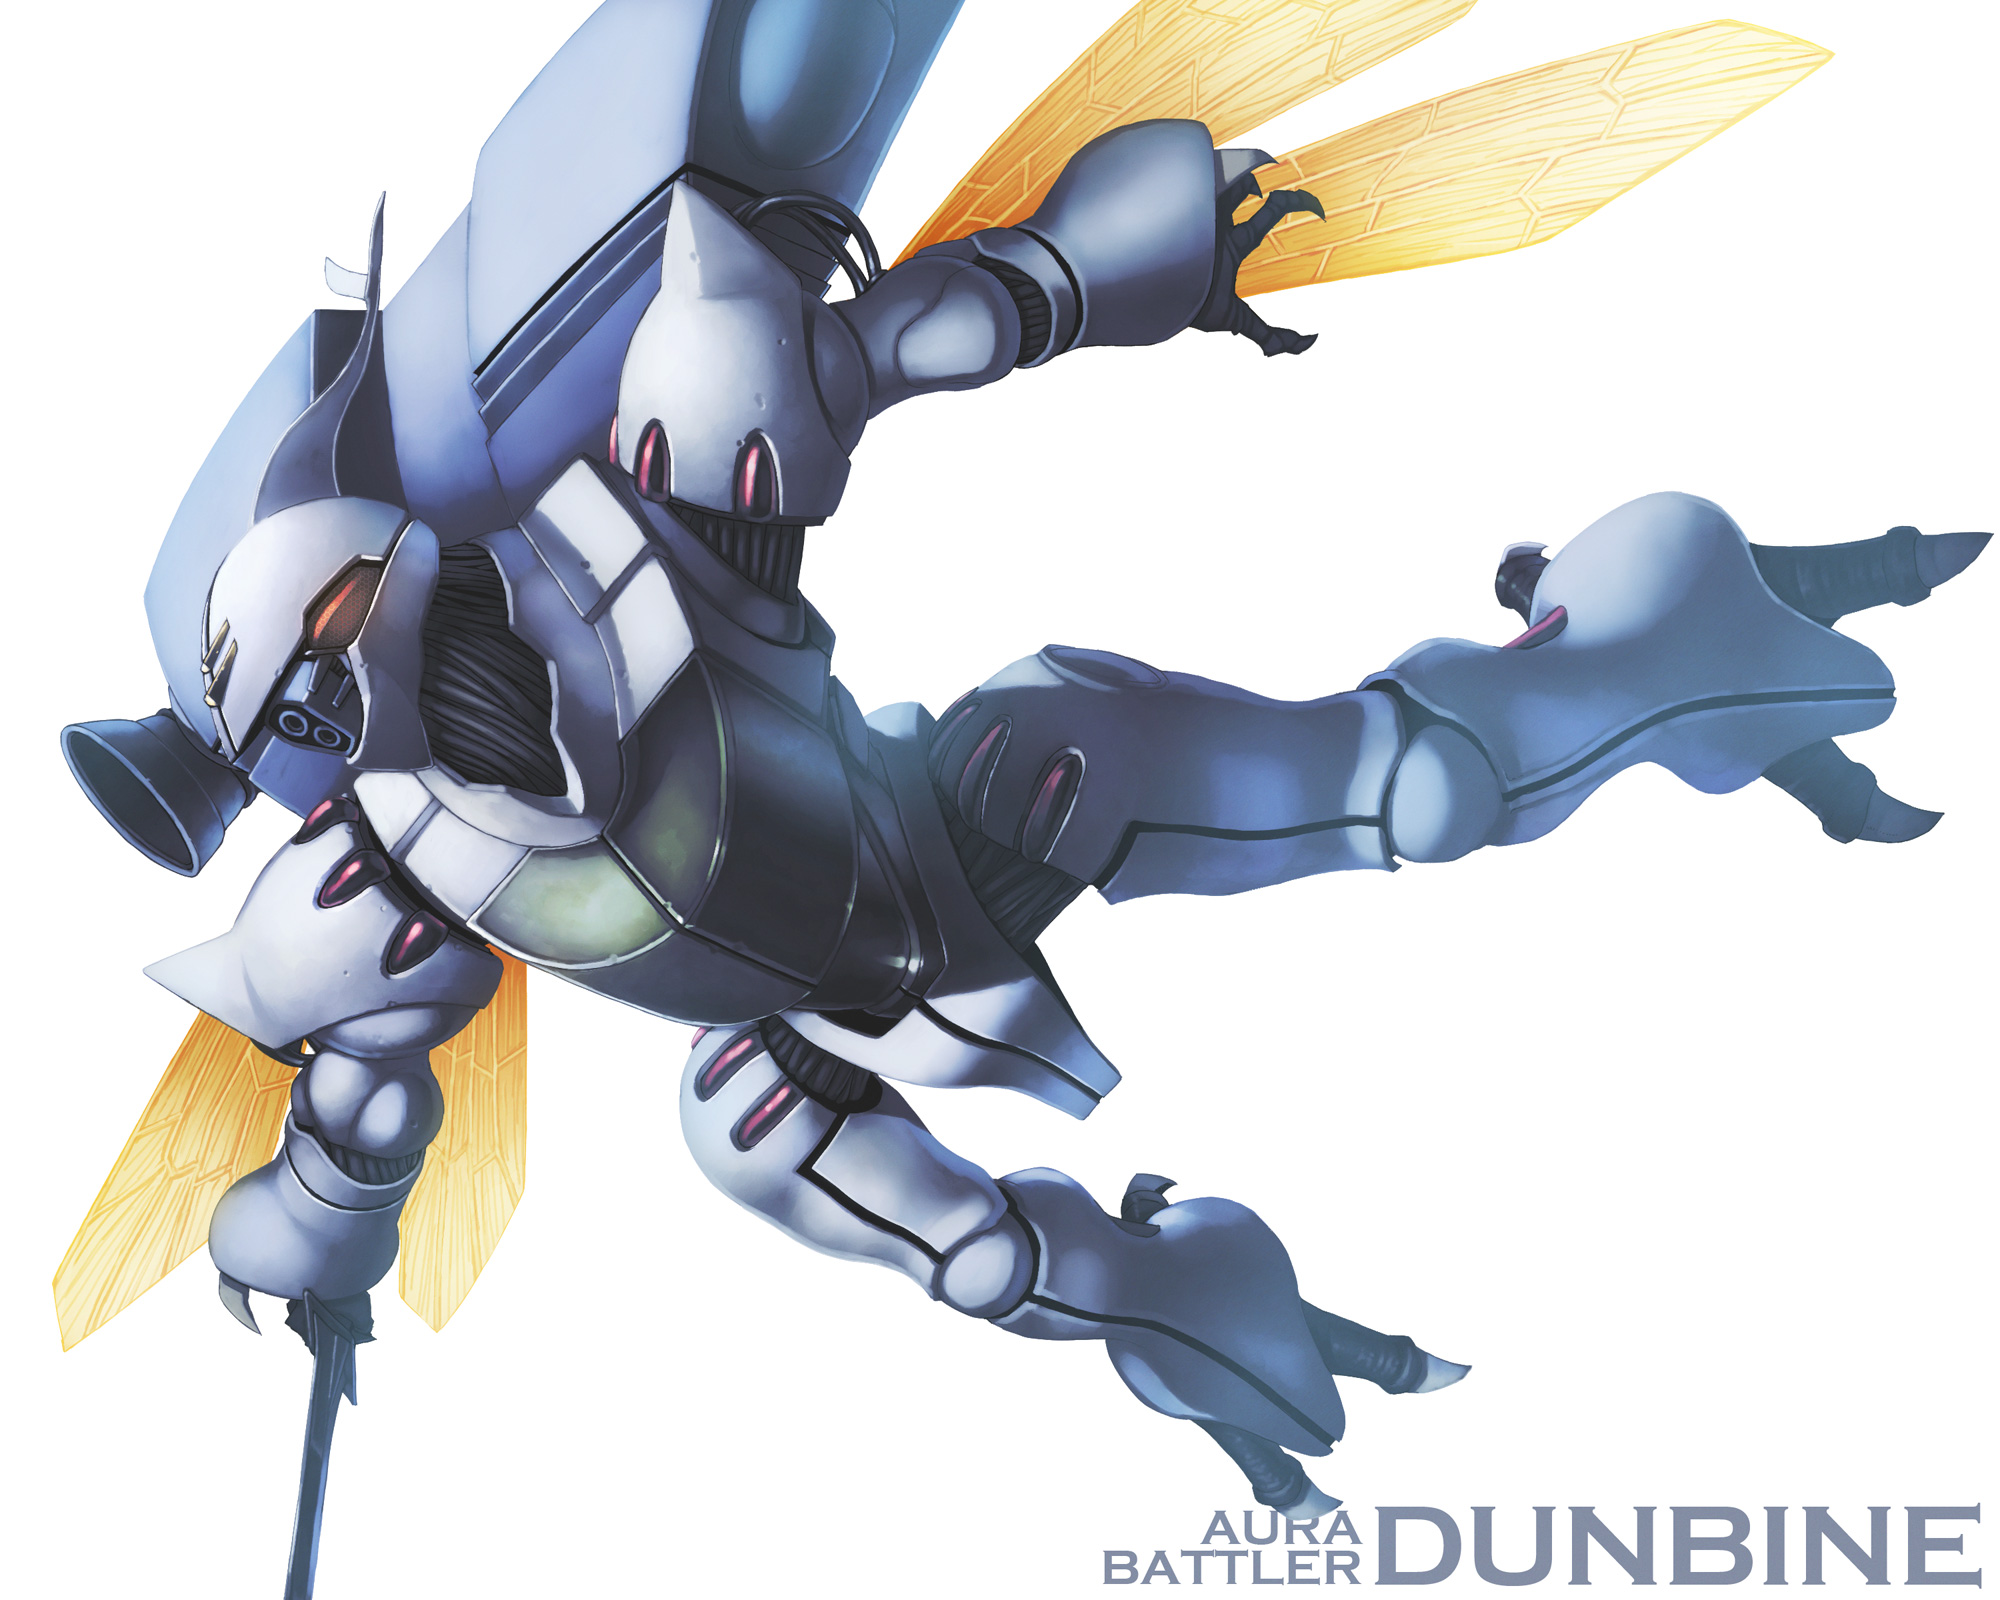 Anime 2000x1600 anime mechs Aura Battler Dunbine Dunbine Super Robot Taisen artwork digital art fan art